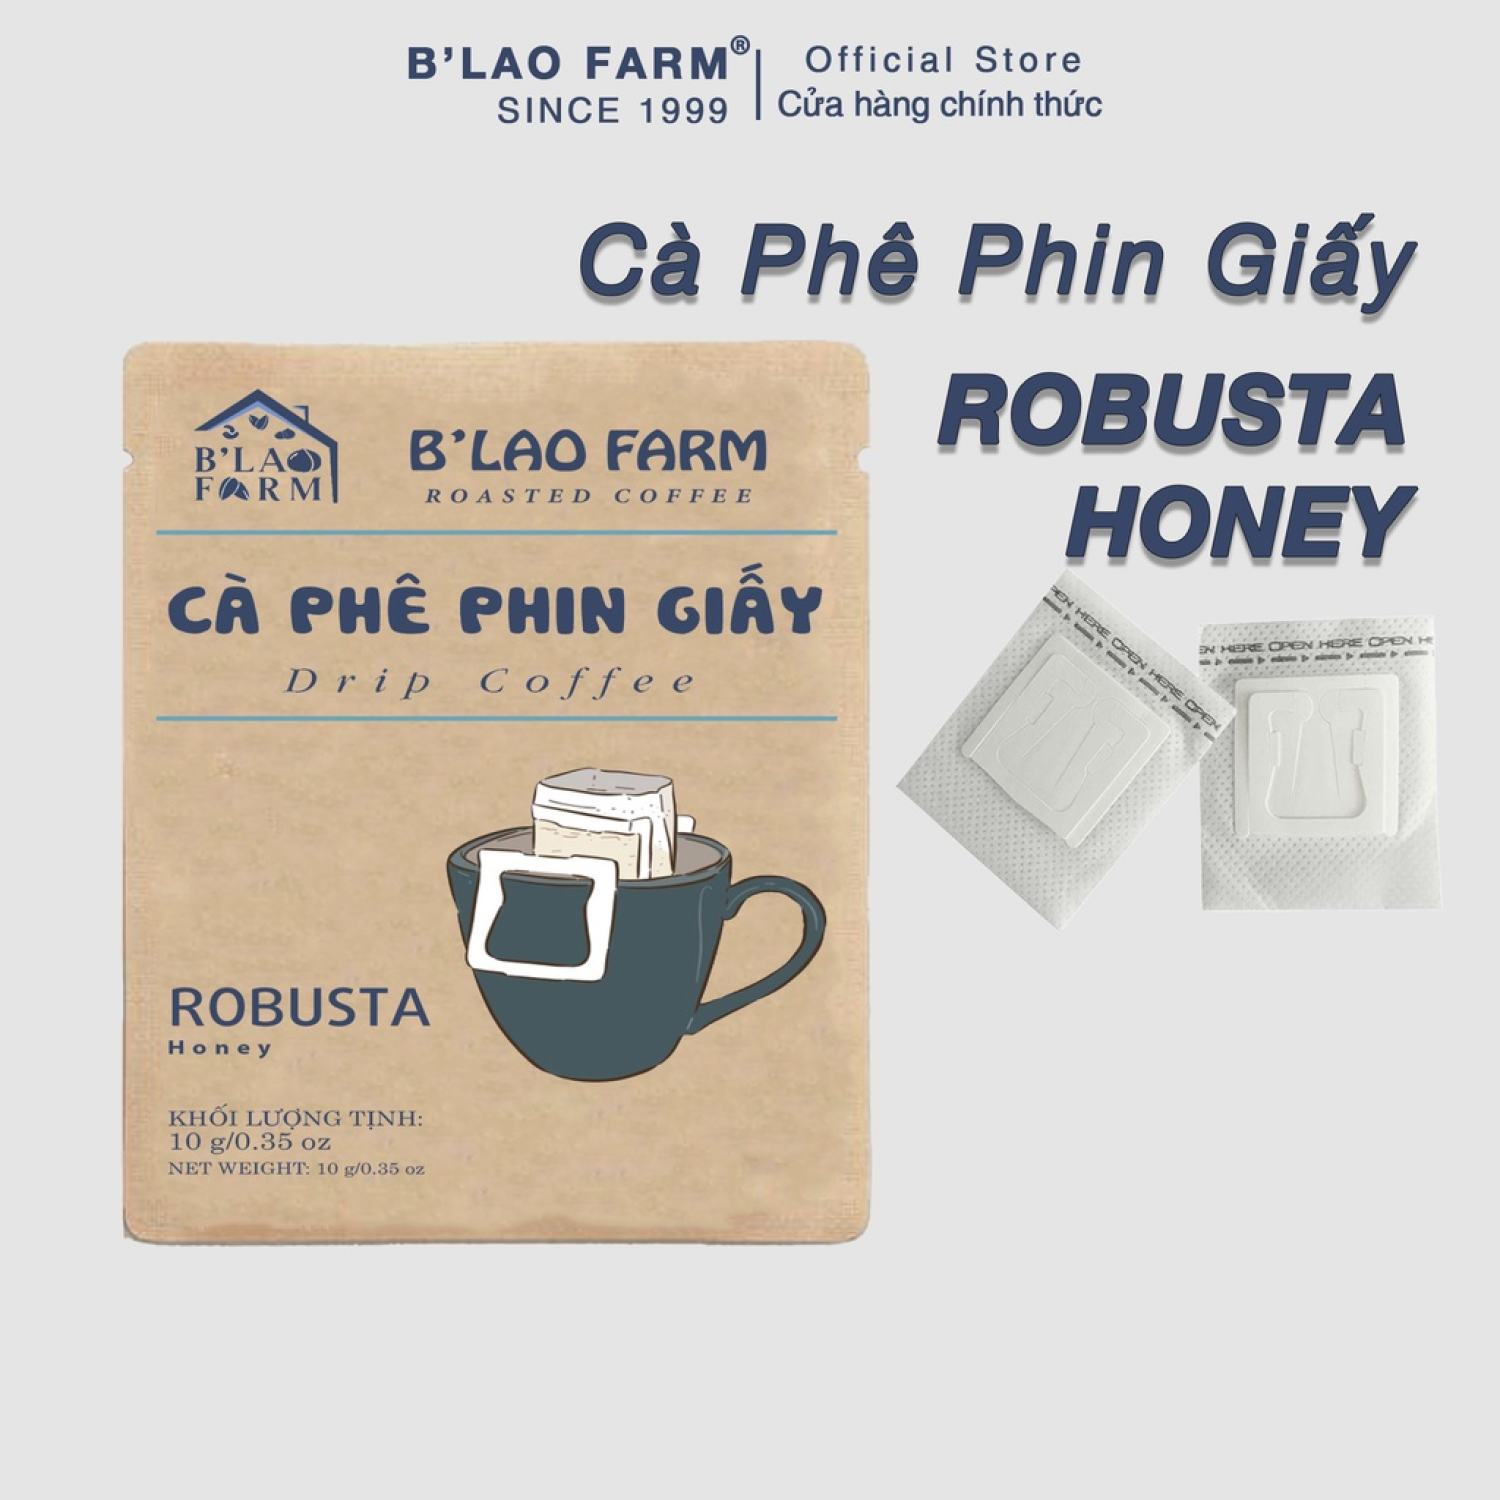 Cà Phê Phin Giấy Robusta Honey B lao Farm sử dụng nhanh chóng ,tiên lợi